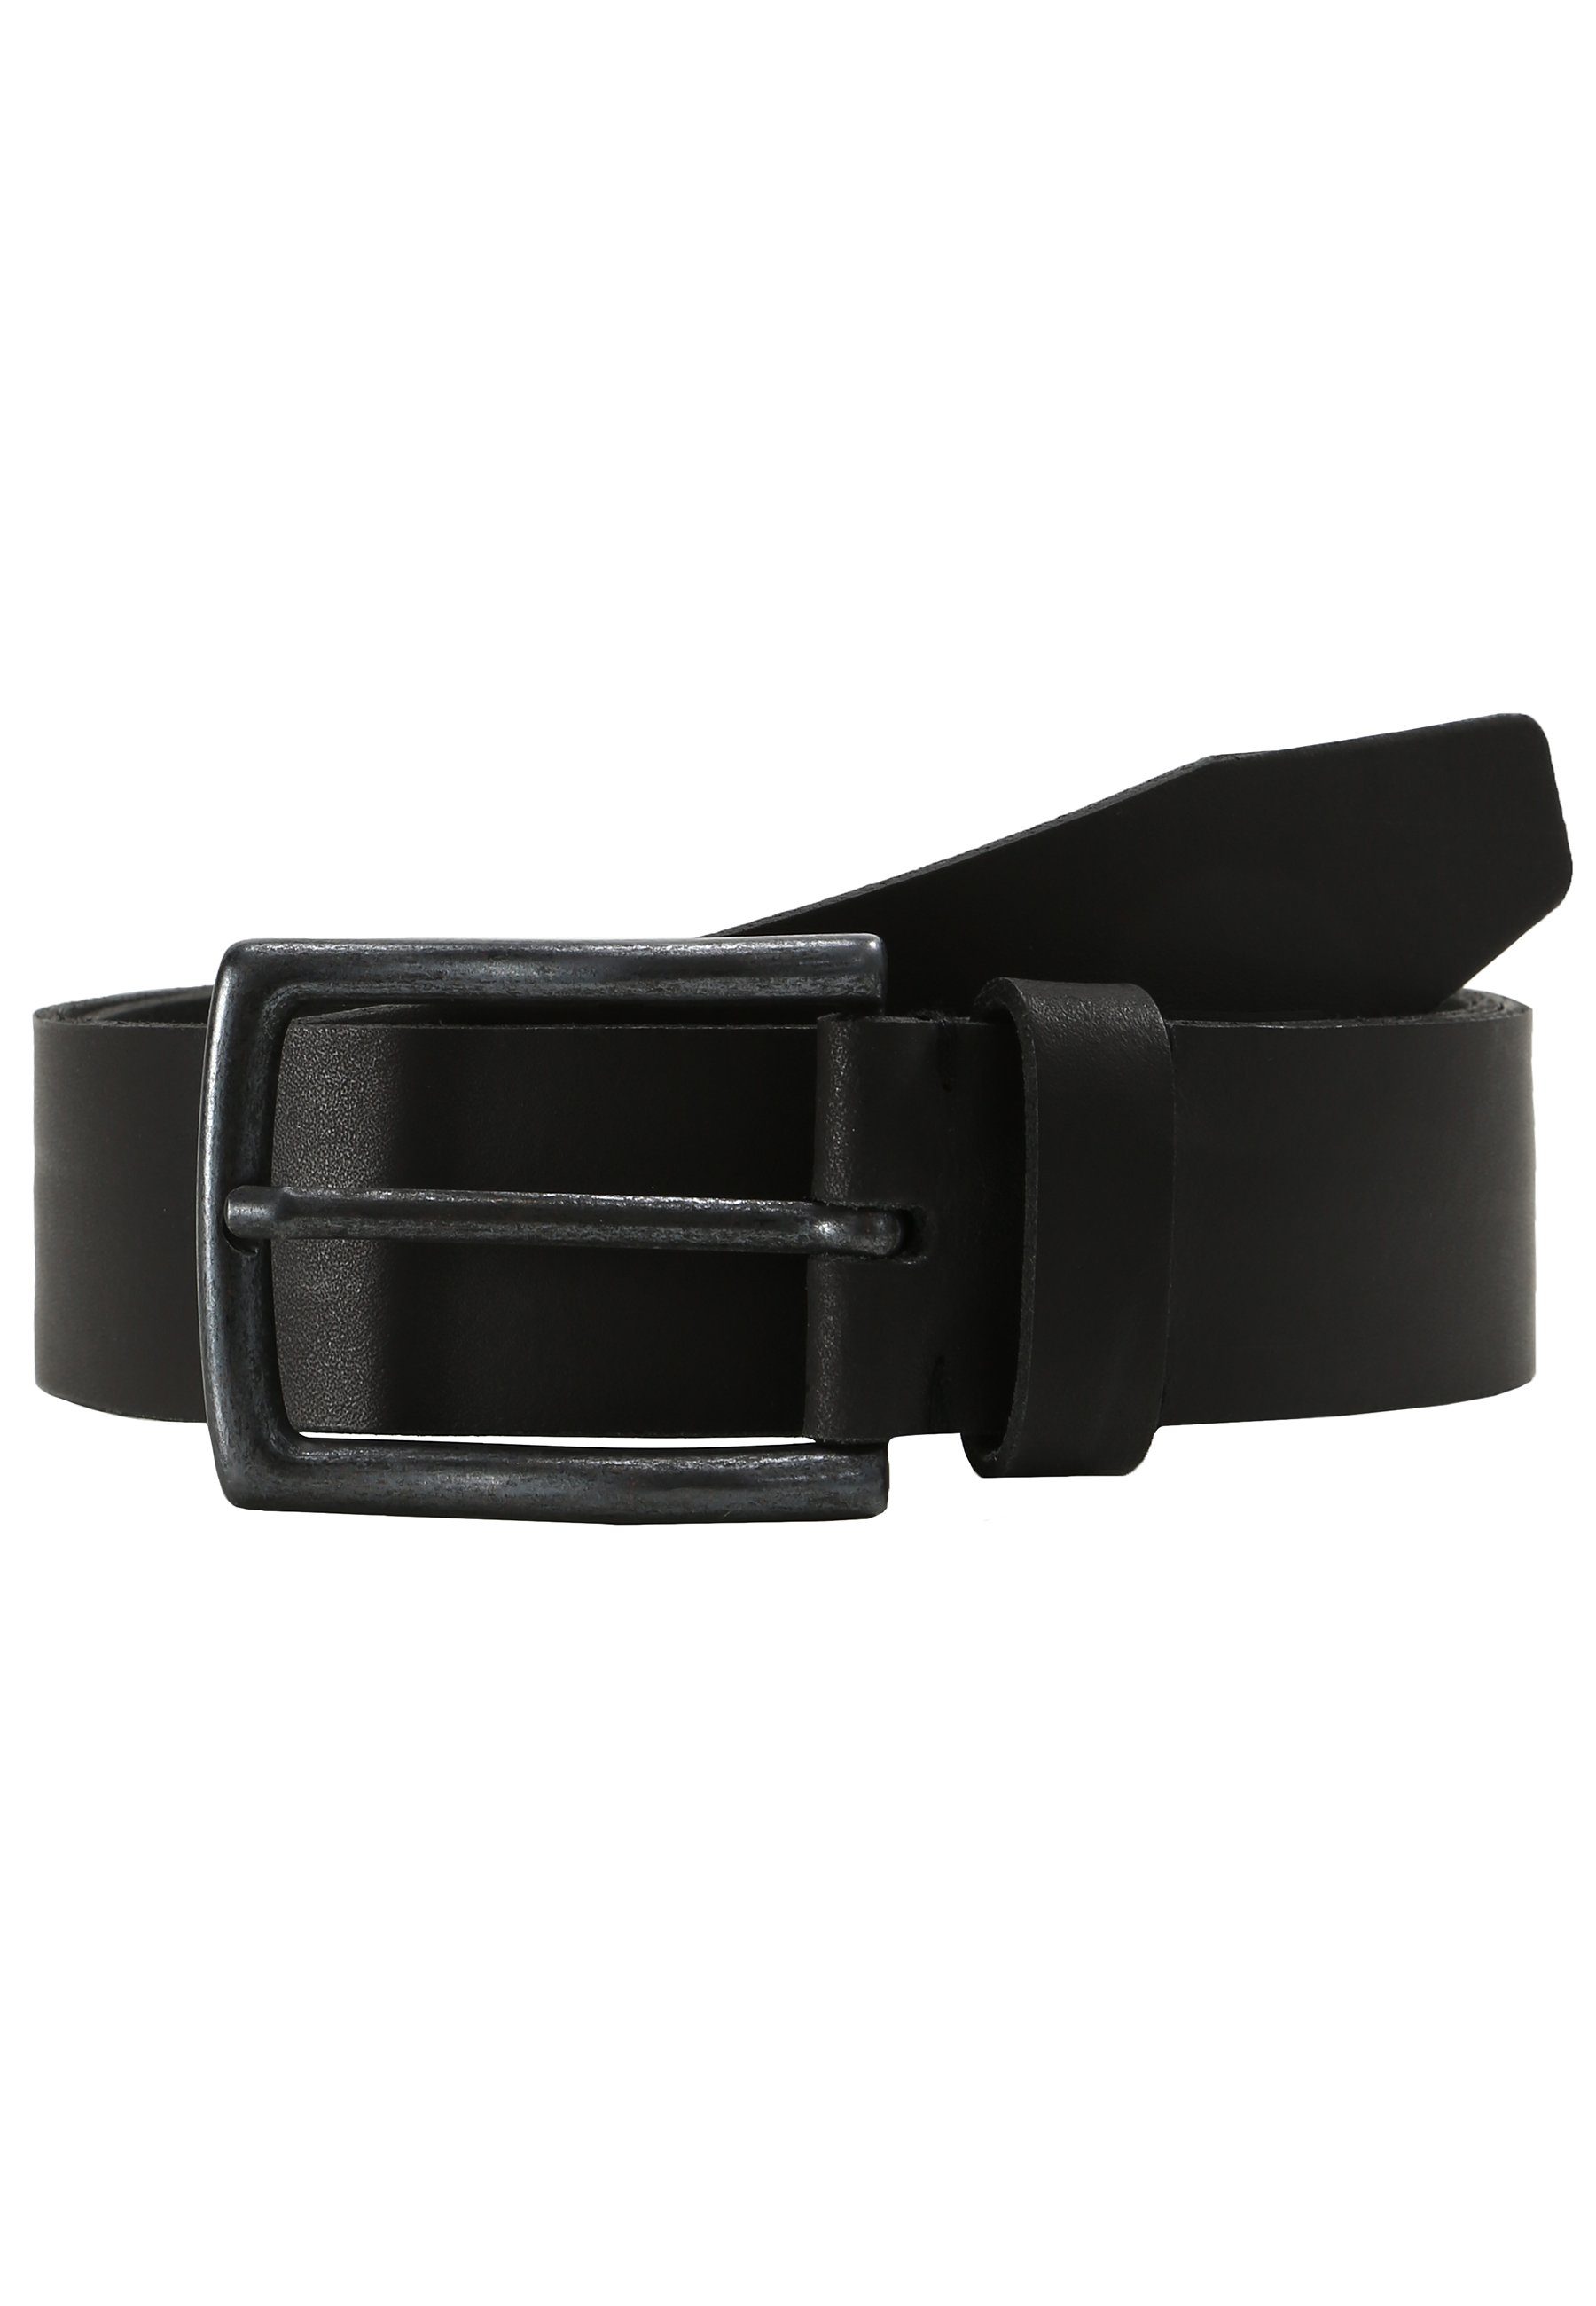 LLOYD Men’s Belts Ledergürtel 05 schwarz